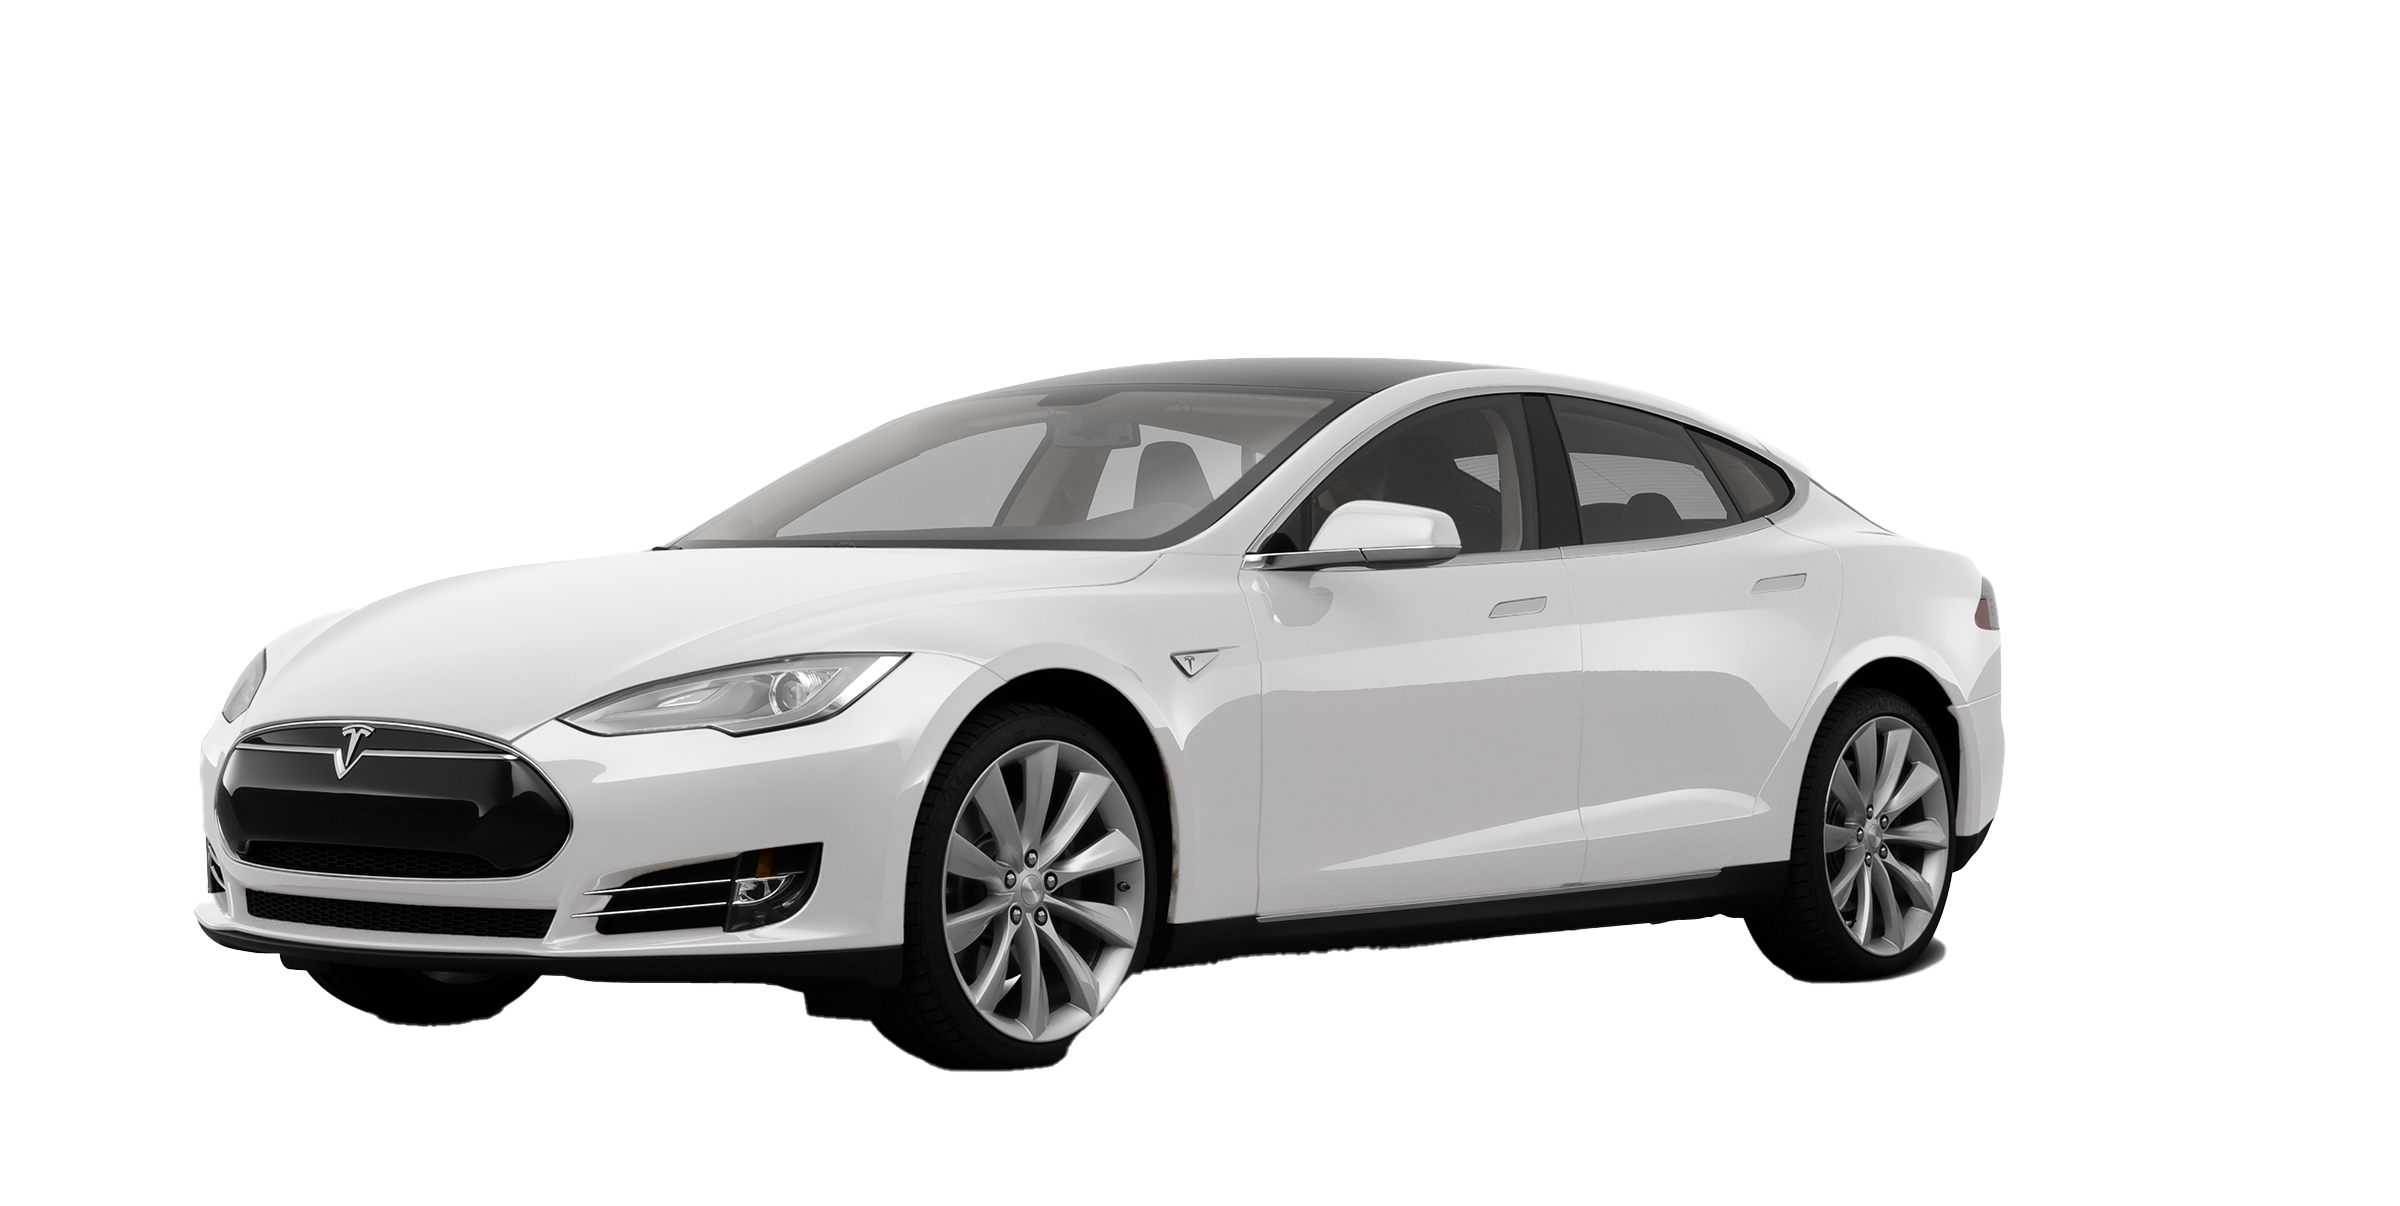 Tesla Model S PNG Image Background